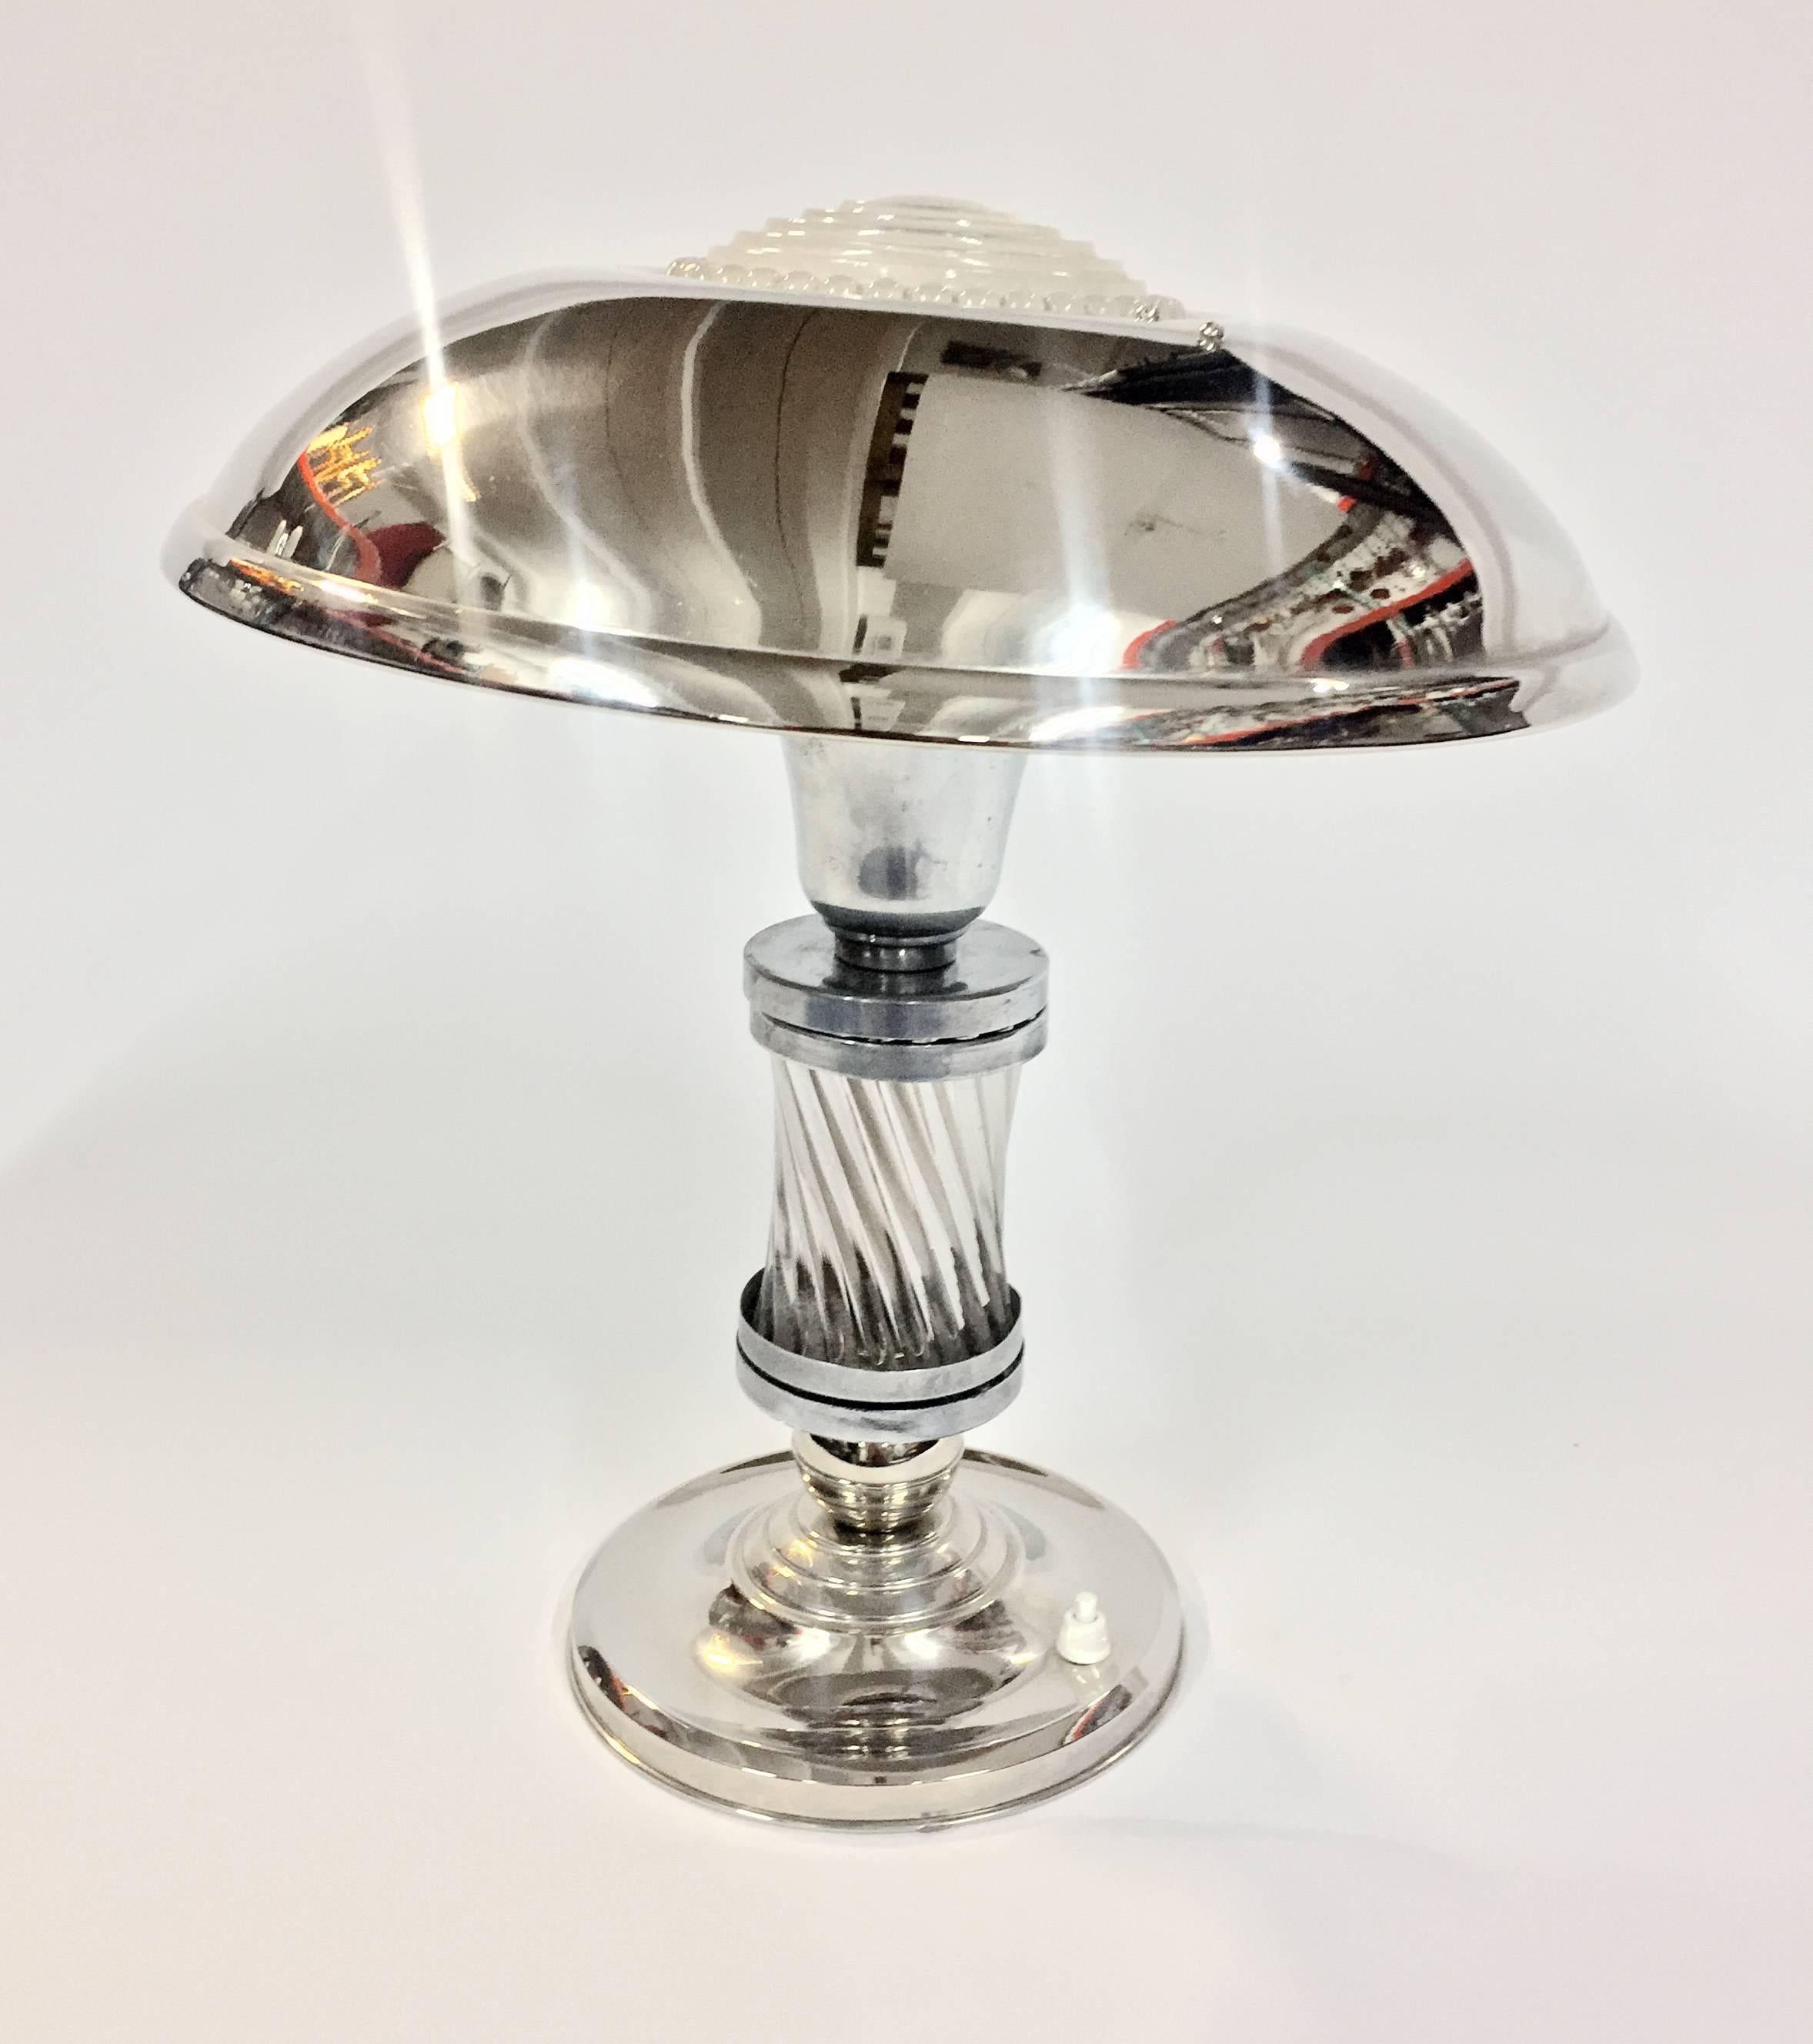 Cette luxueuse lampe de table Art déco, datant de 1925, présente un corps chromé avec une base et un abat-jour argentés pour un contraste magnifique. Tiges de verre sur le corps et plaque de verre moulé pour coiffer l'abat-jour. L'abat-jour pivote